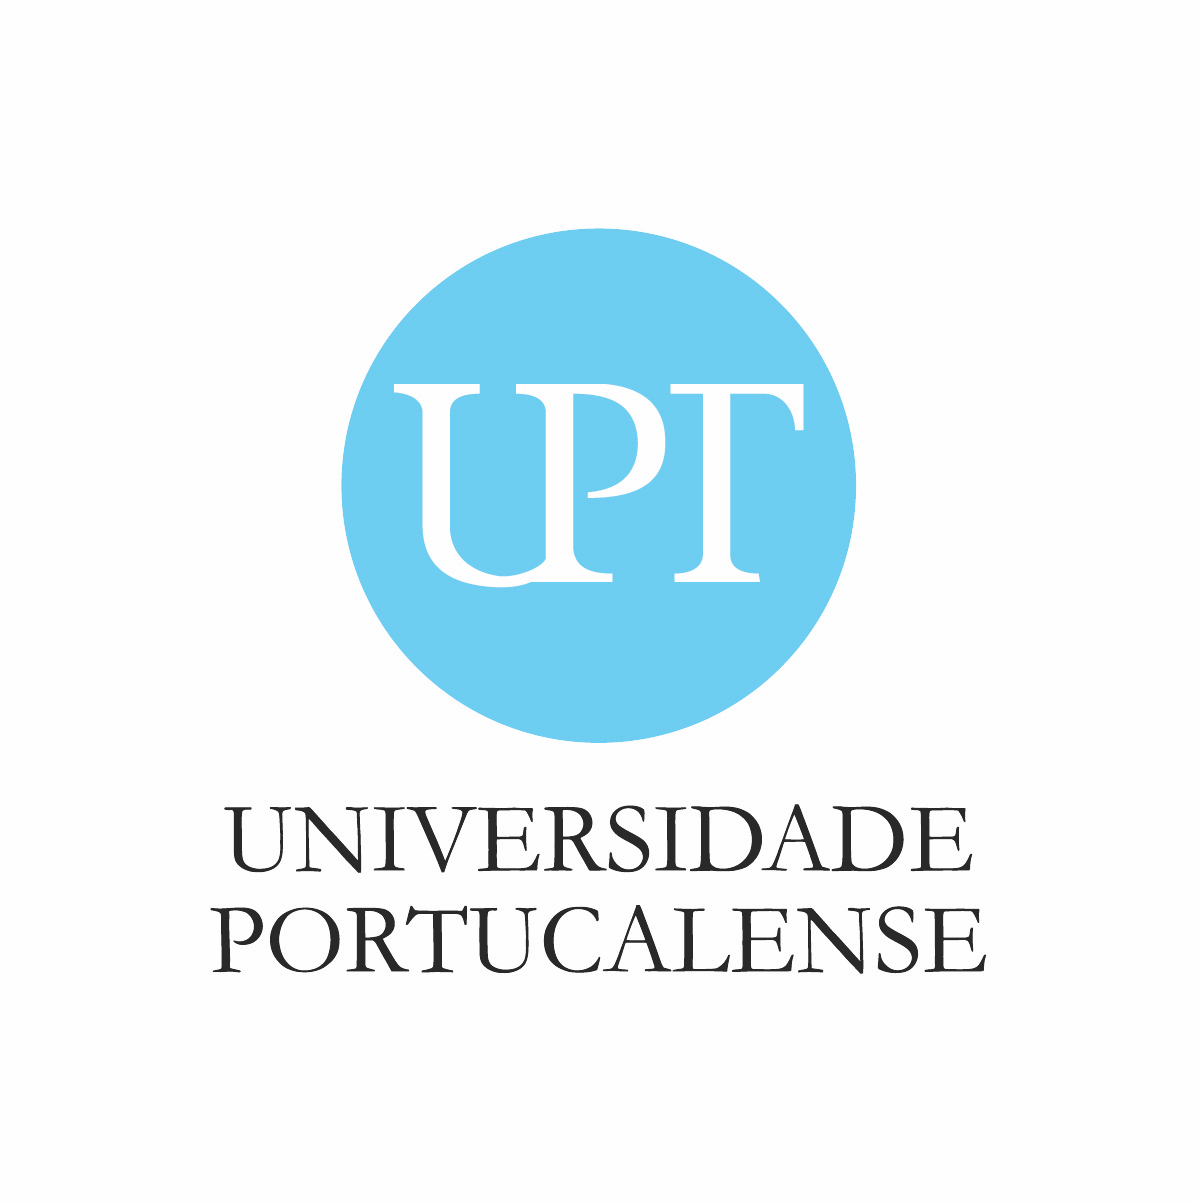 UPT. Universidade Portucalense - Parrainage